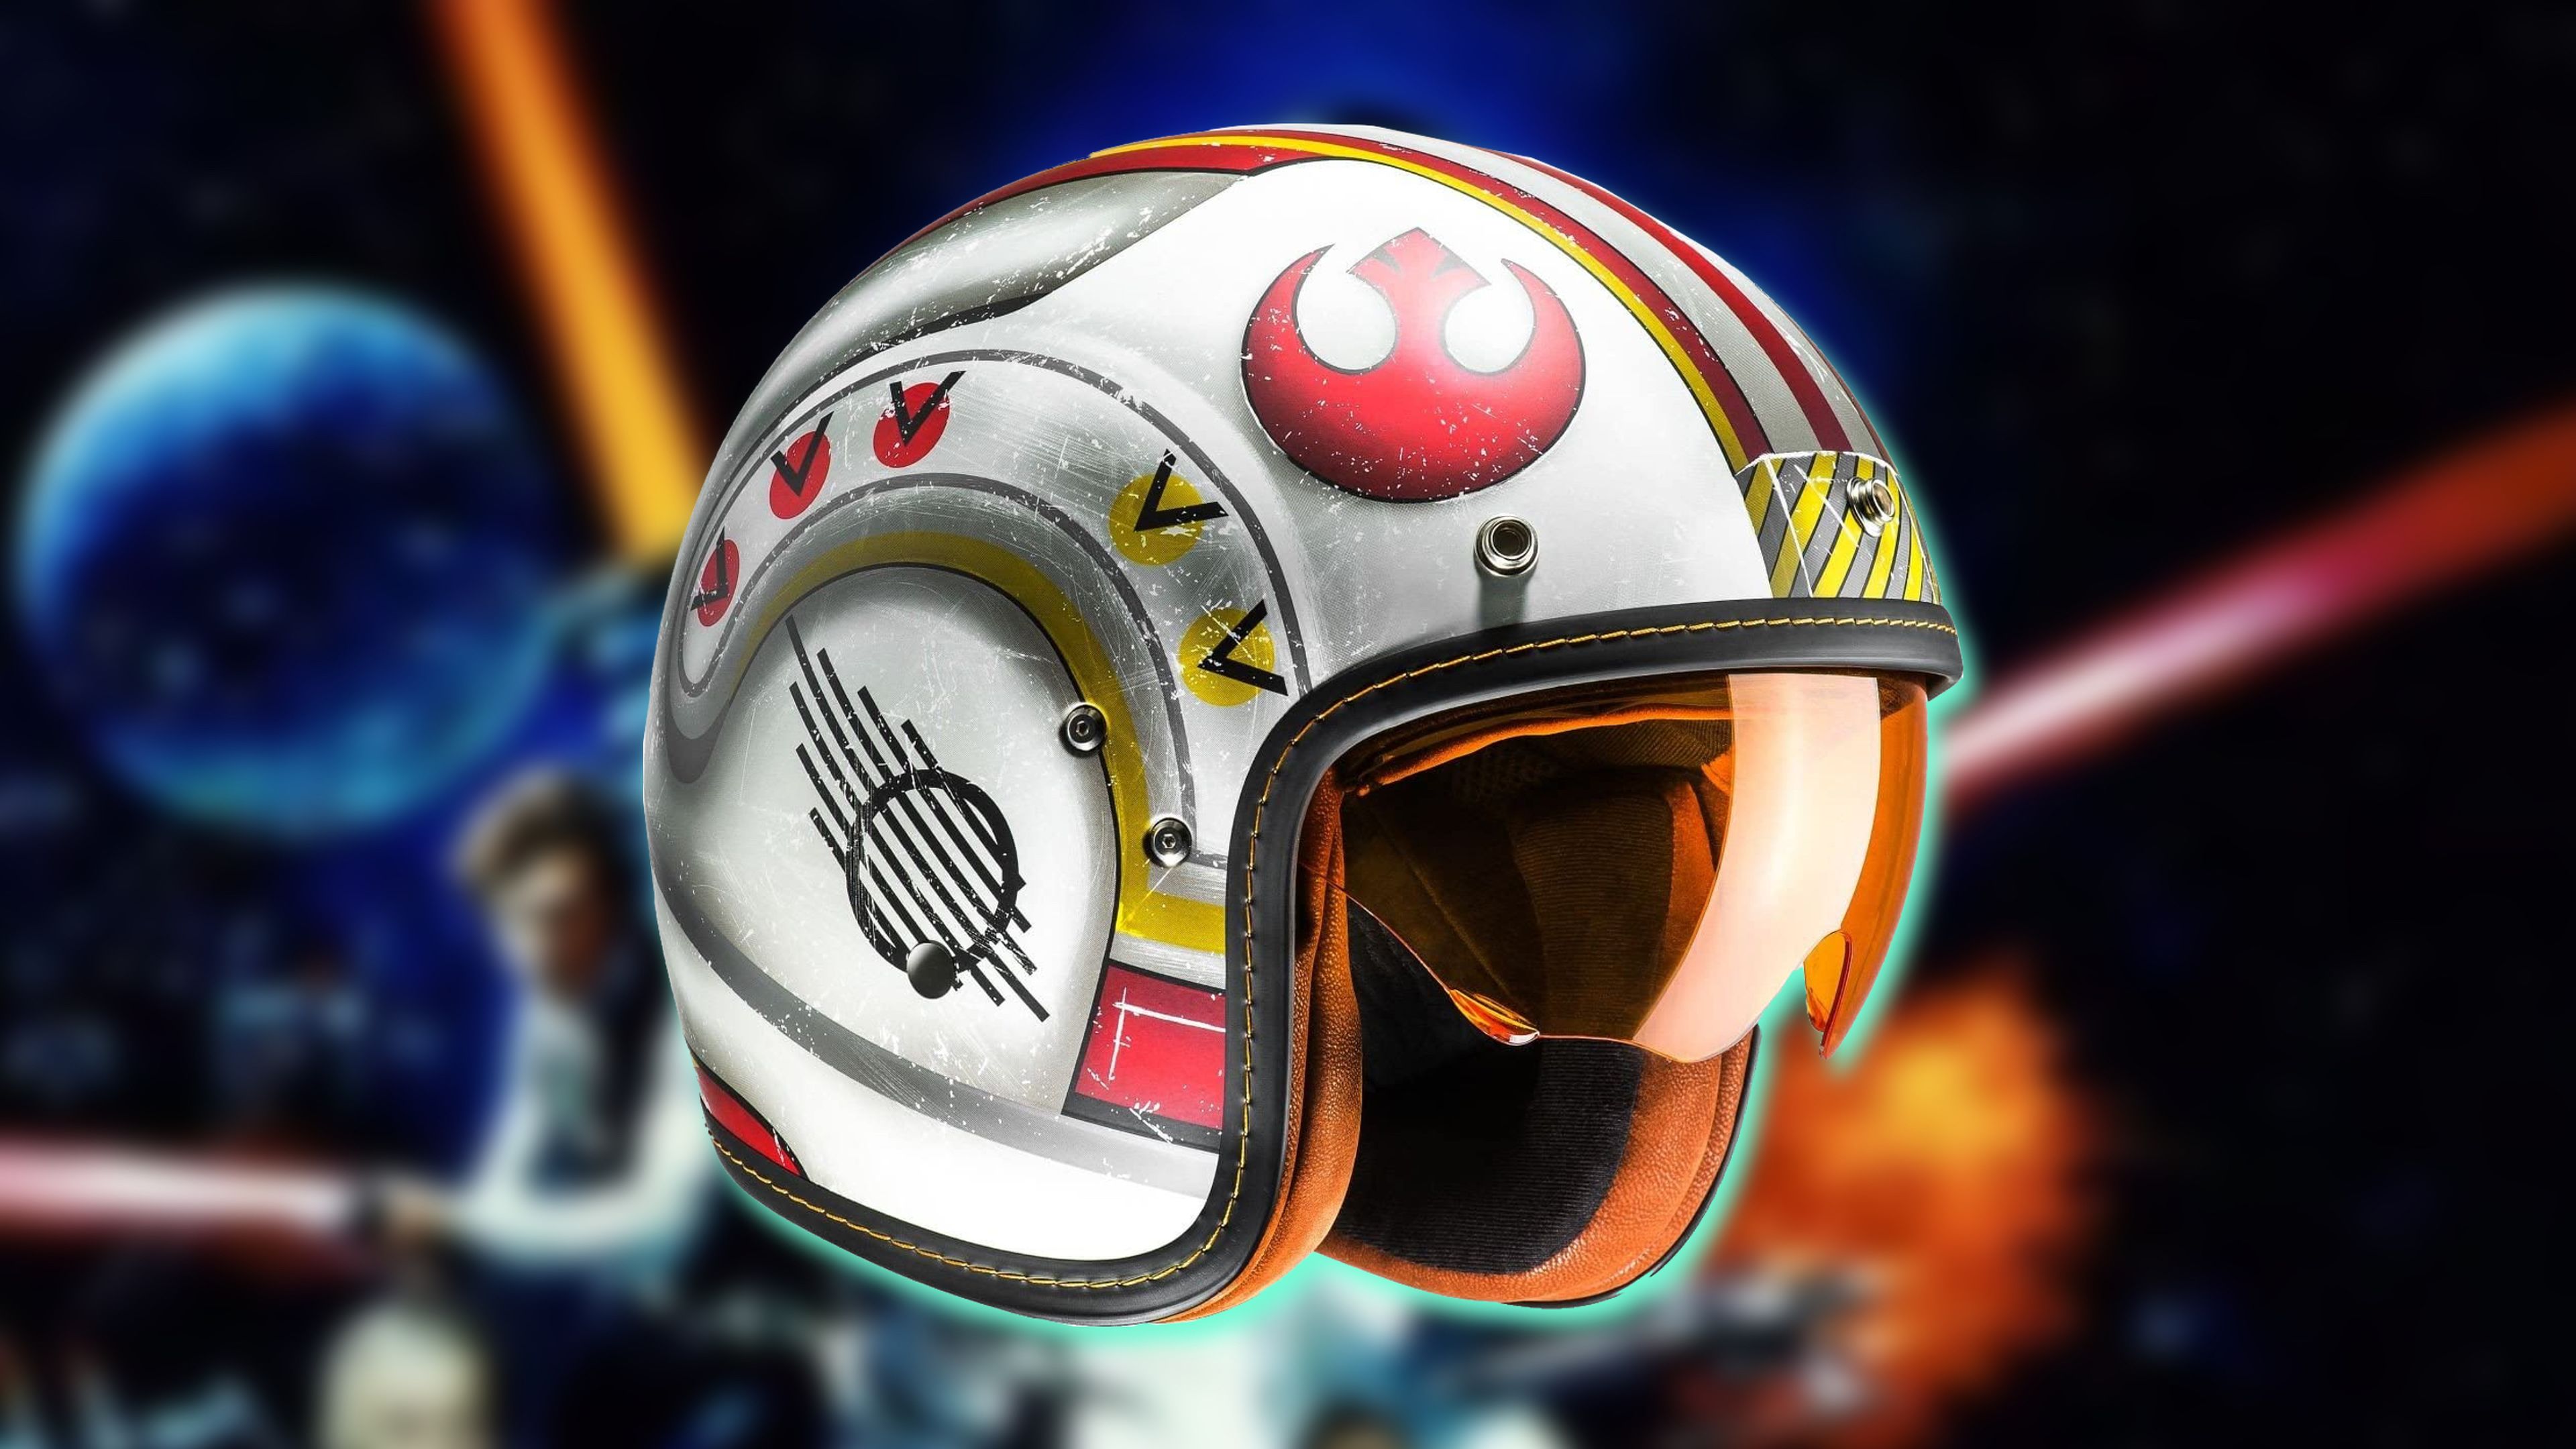 Casco de moto Star Wars